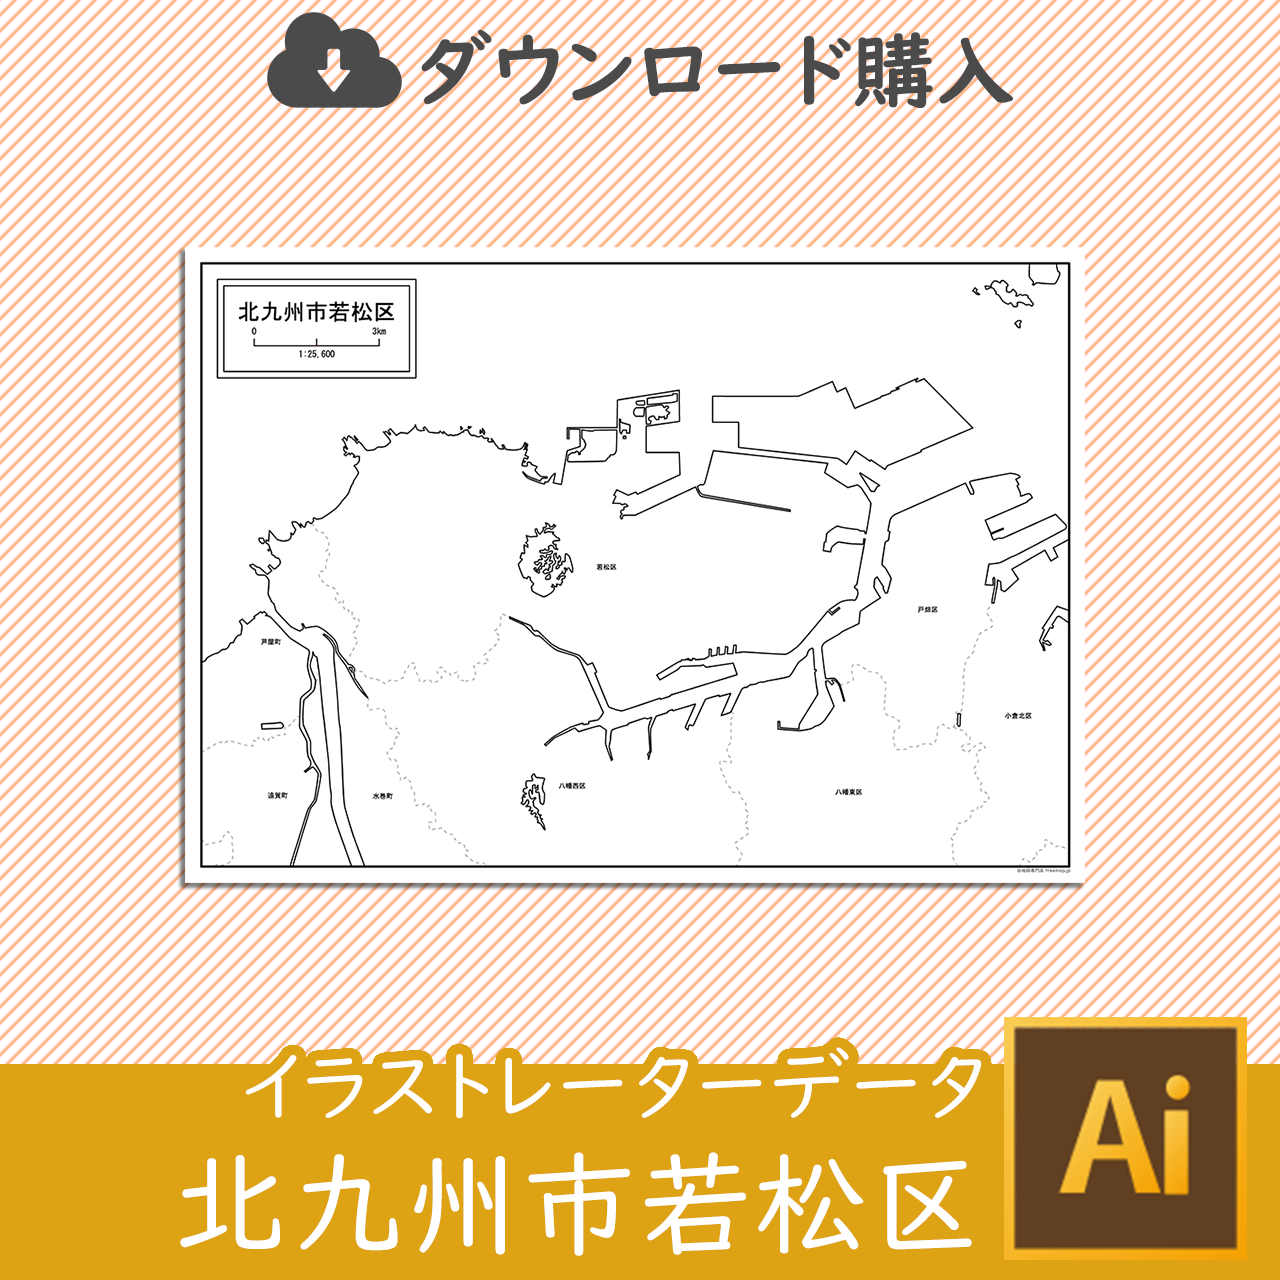 北九州市若松区のaiデータのサムネイル画像